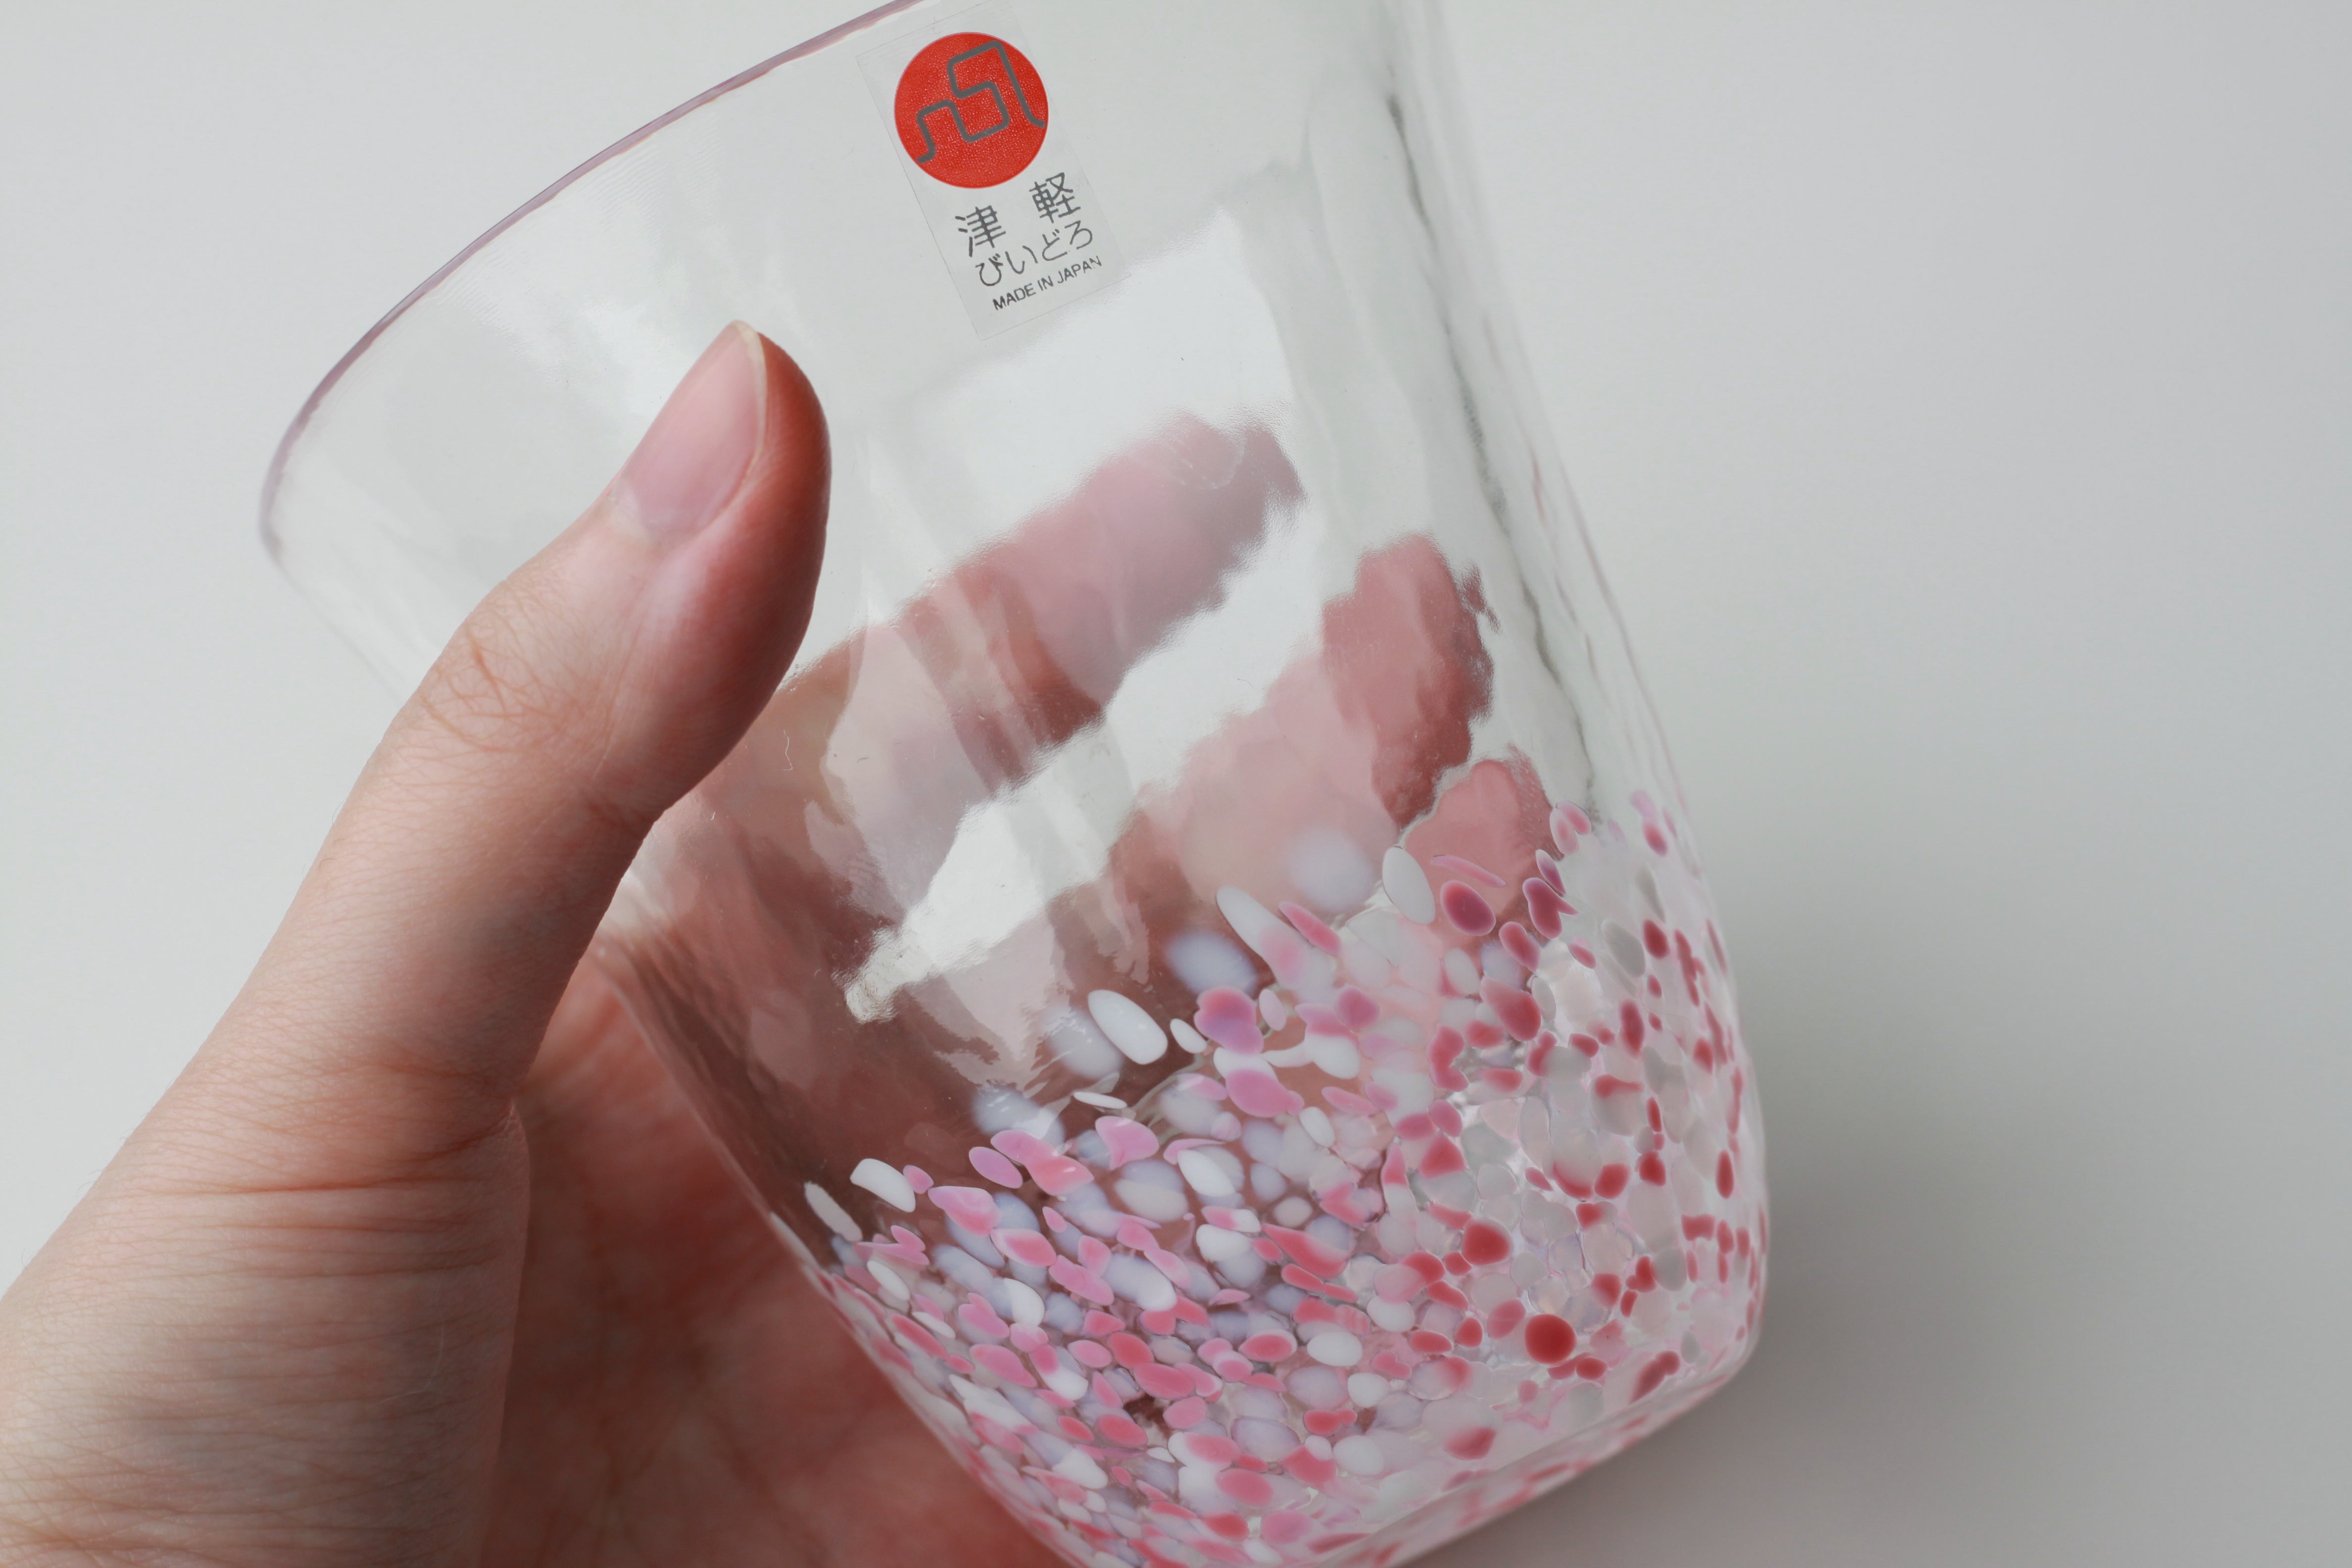 Ishizuka Glass - Tsugaru Vidro Sakura Tableware Collection